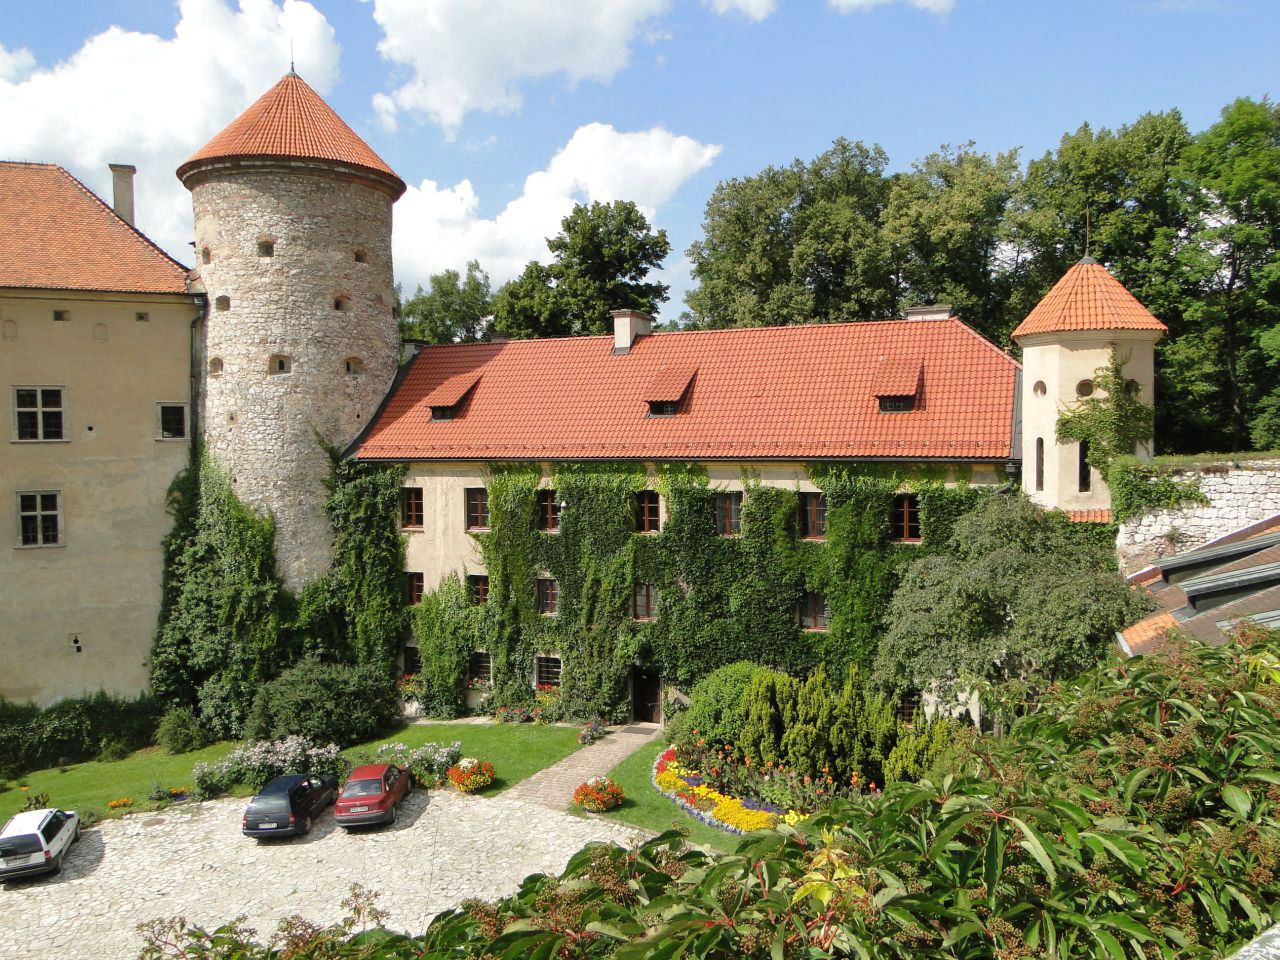 Pieskowa Skała Castle